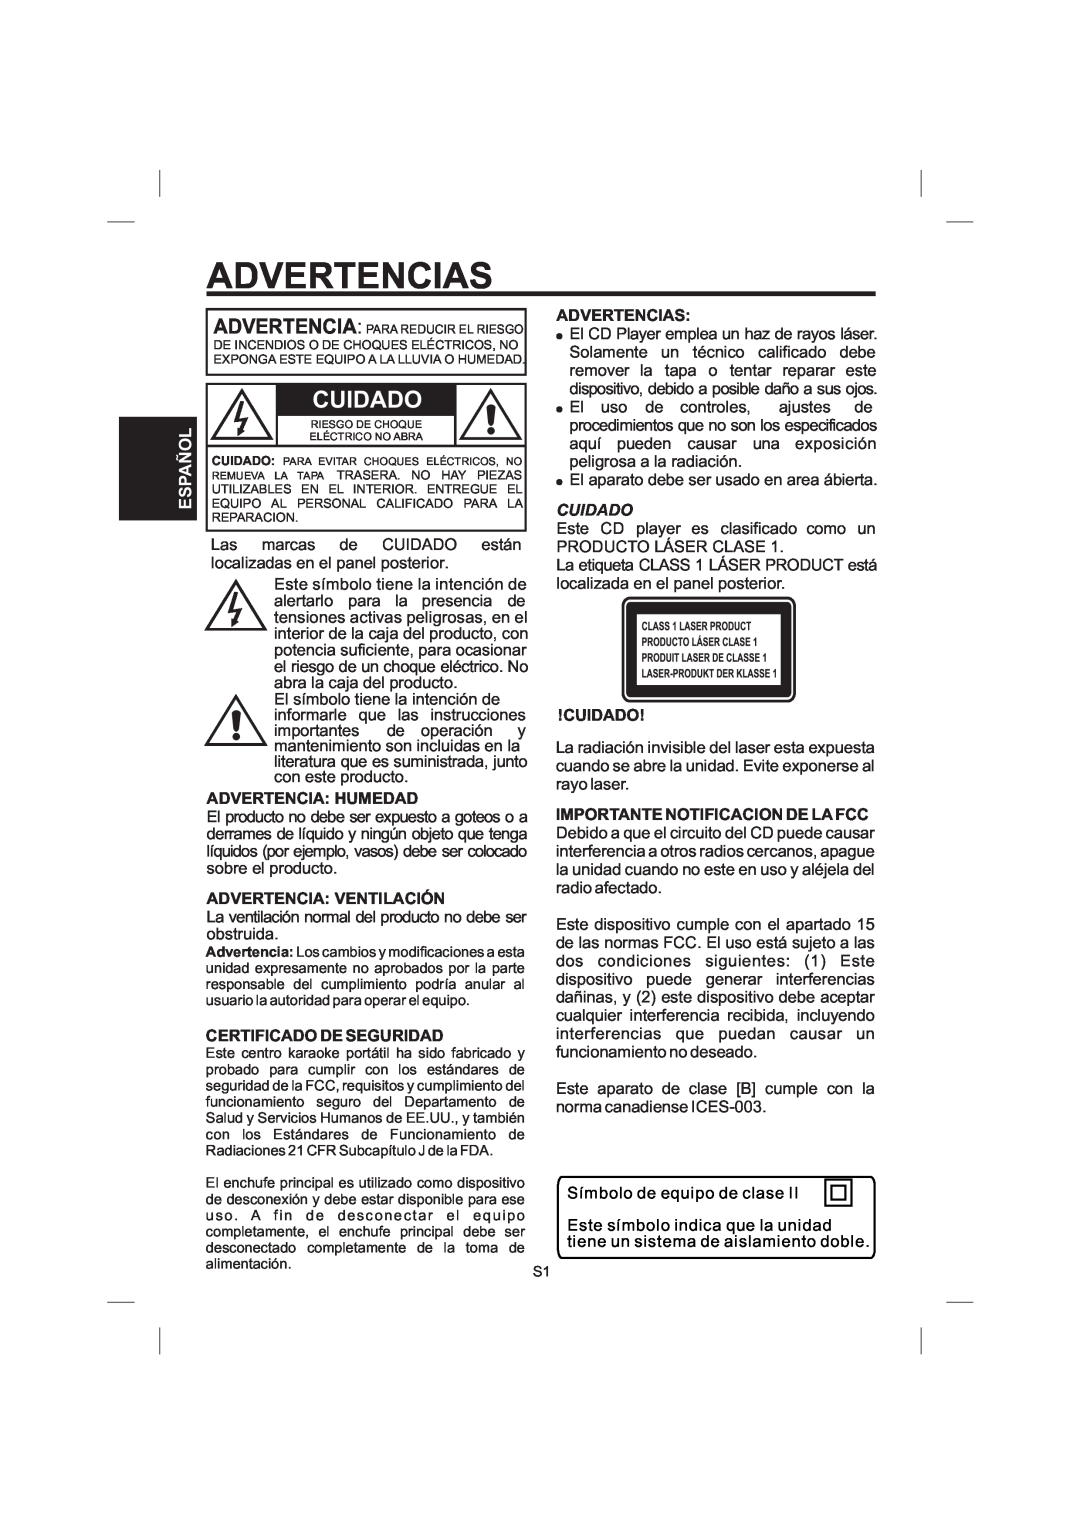 The Singing Machine STVG-359 Advertencias, Advertencia Humedad, Advertencia Ventilación, Certificado De Seguridad, Cuidado 